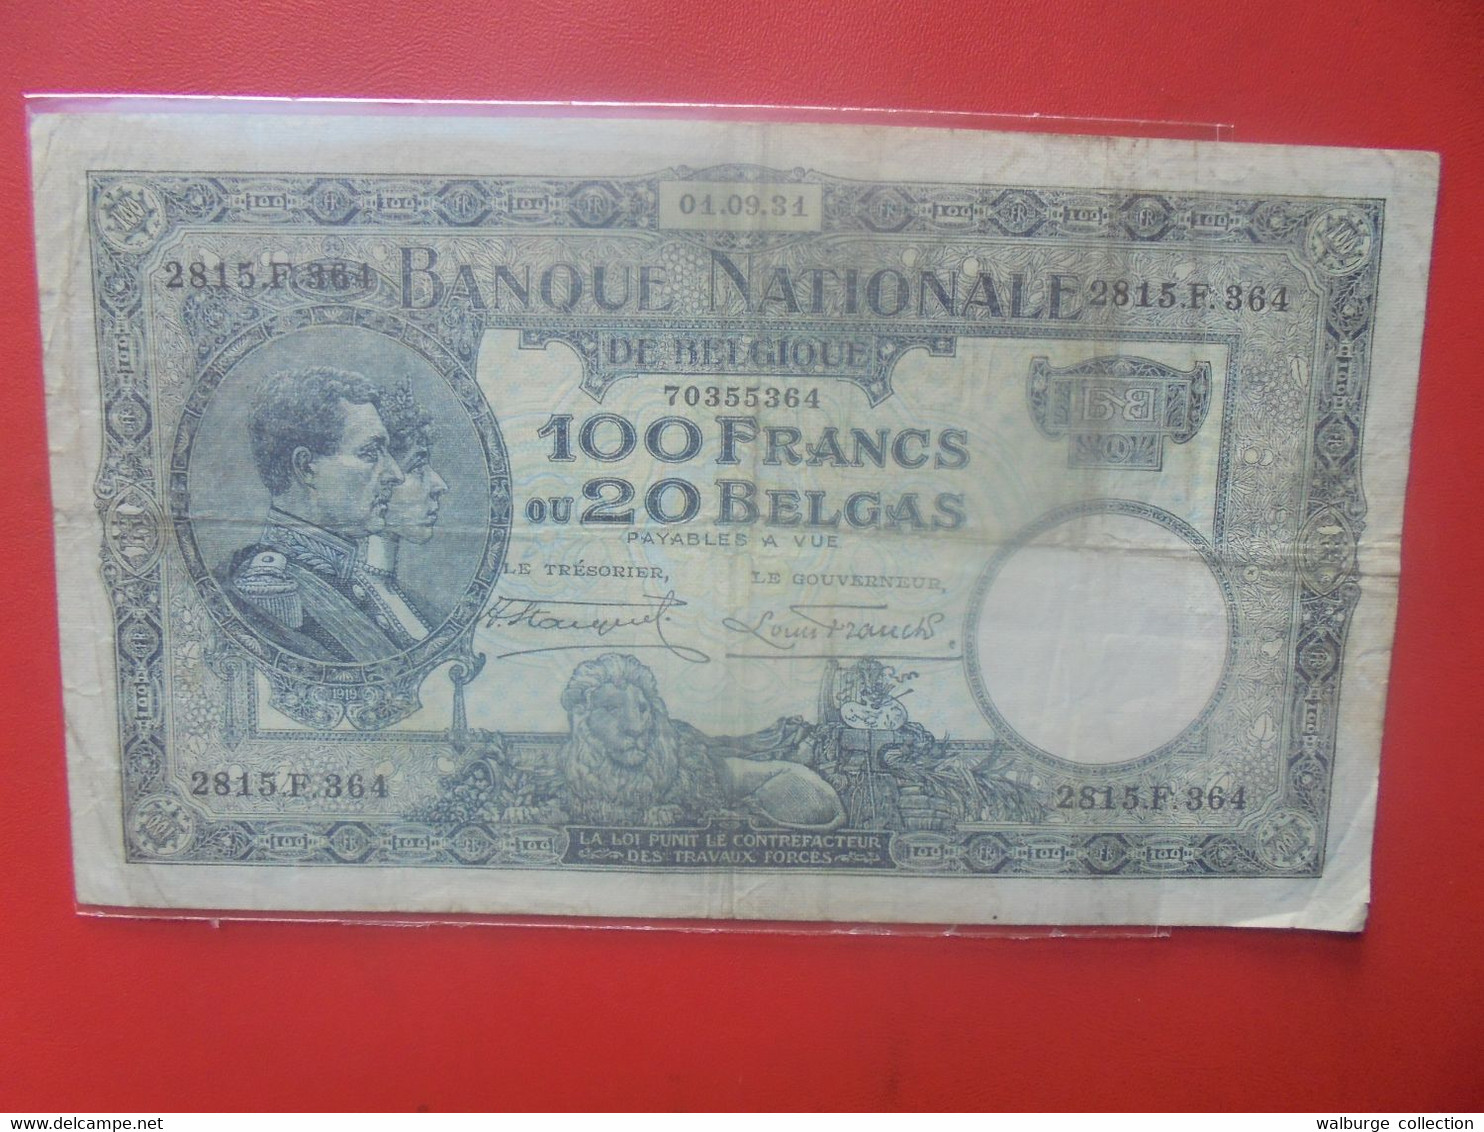 BELGIQUE 100 FRANCS 1-9-31 Circuler (B.26) - 100 Francs & 100 Francs-20 Belgas